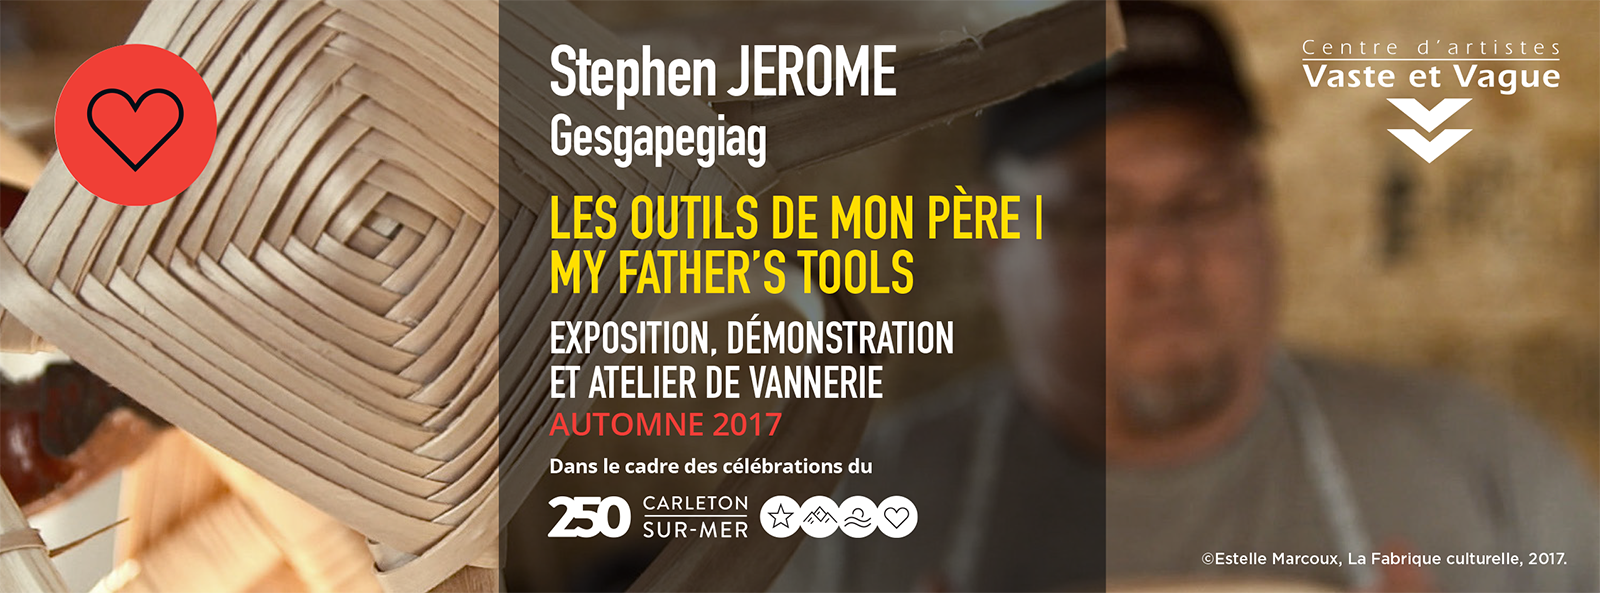 Stephen JEROME, Gesgapegiag LES OUTILS DE MON PÈRE | MY FATHER’S TOOLS Installation, démonstration et atelier de vannerie